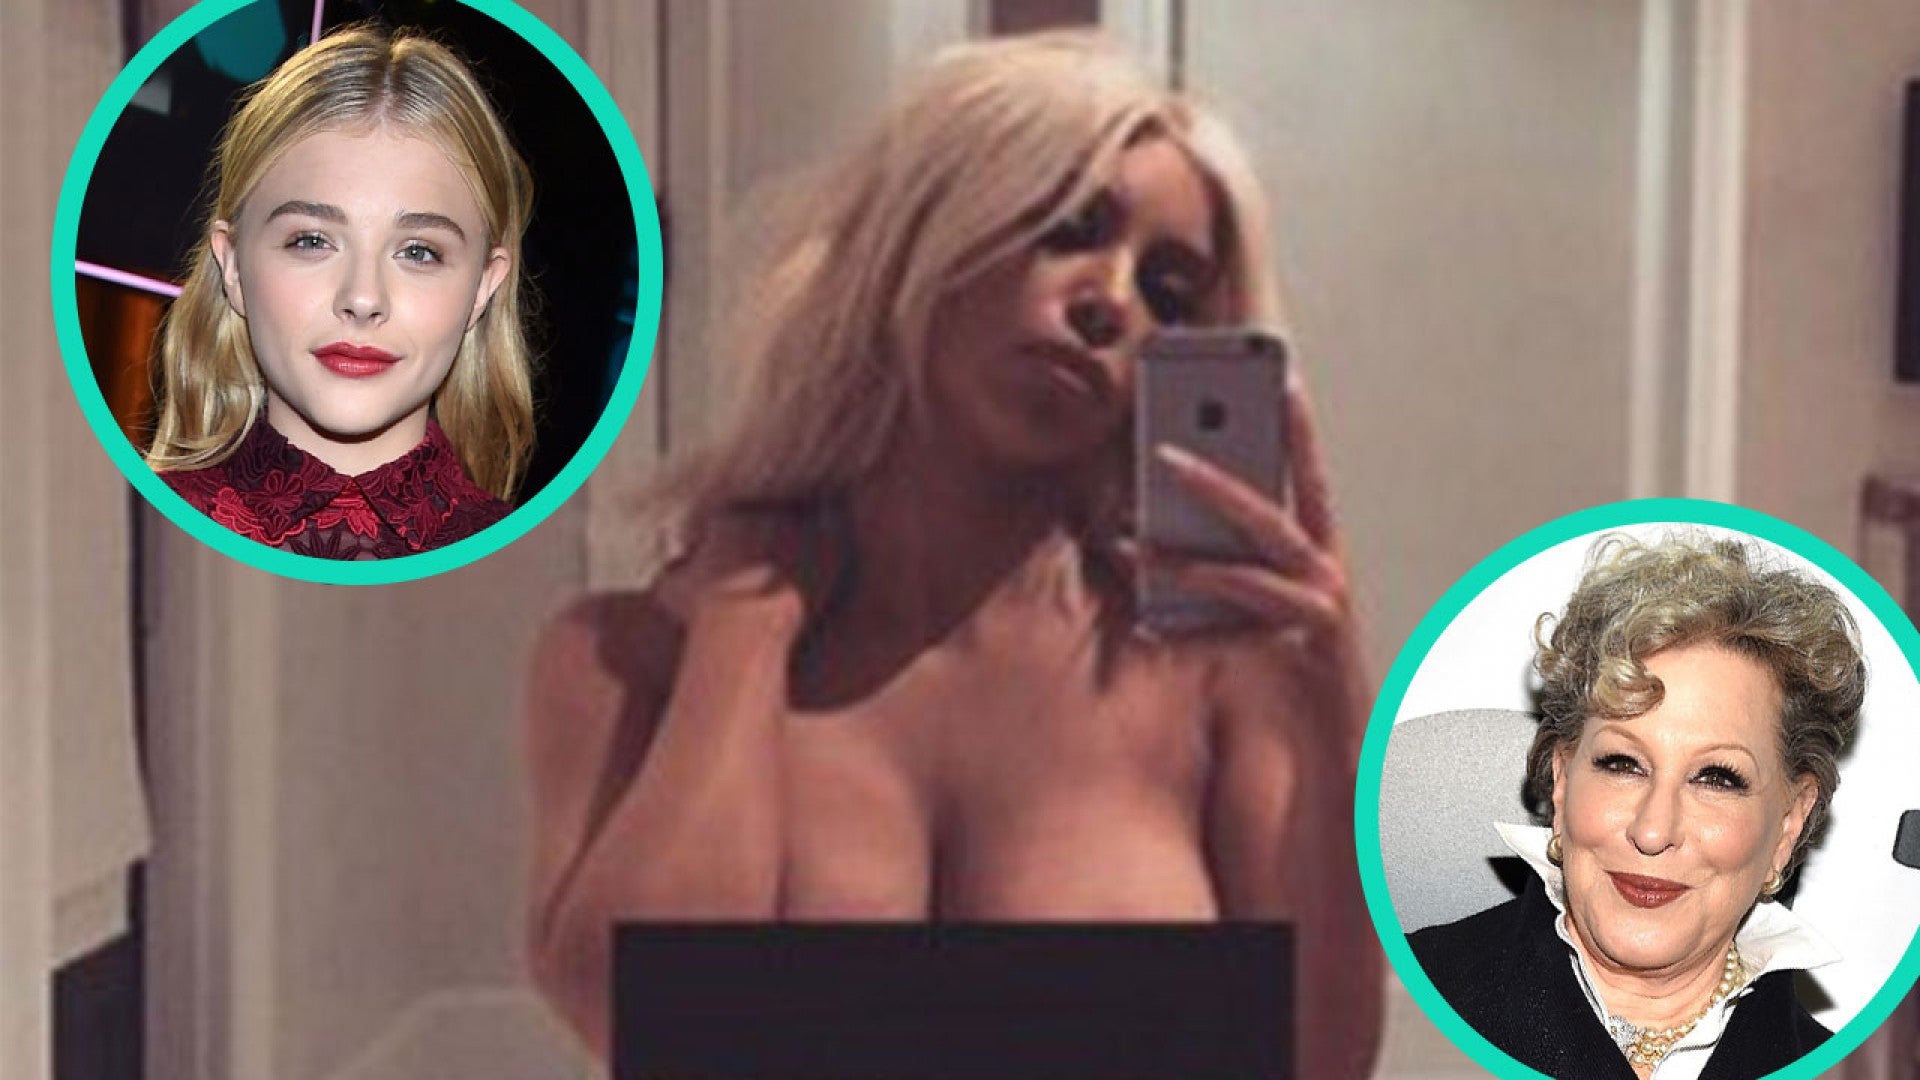 Chloe From Dance Moms - Bette Midler and Chloe Grace Moretz Slam Kim Kardashian for Nude Selfie |  Entertainment Tonight